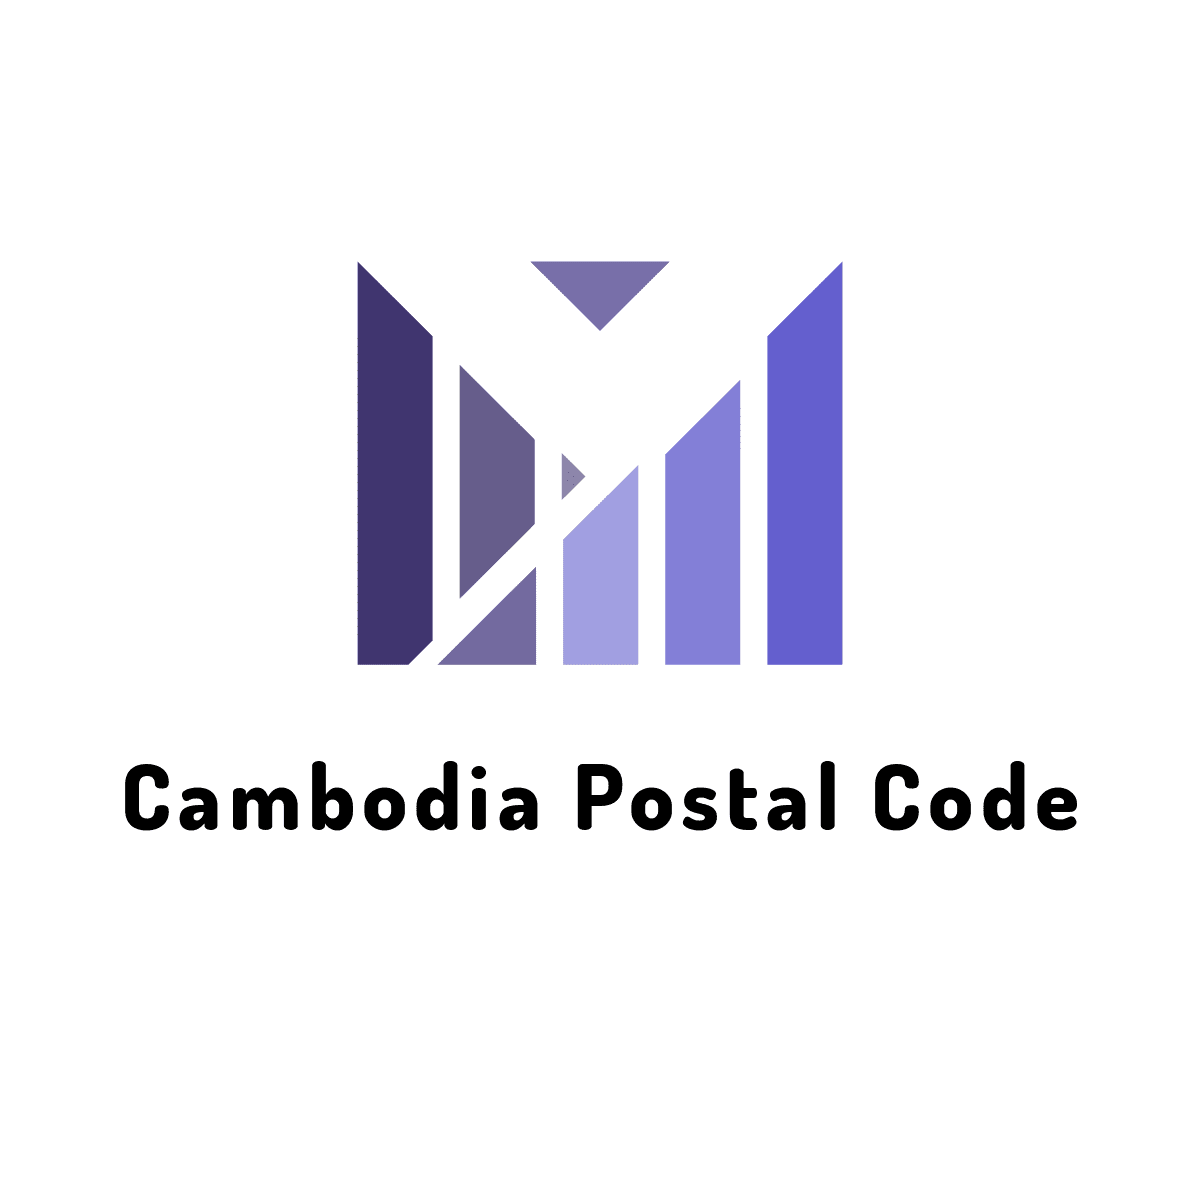 Kampong cham postal code